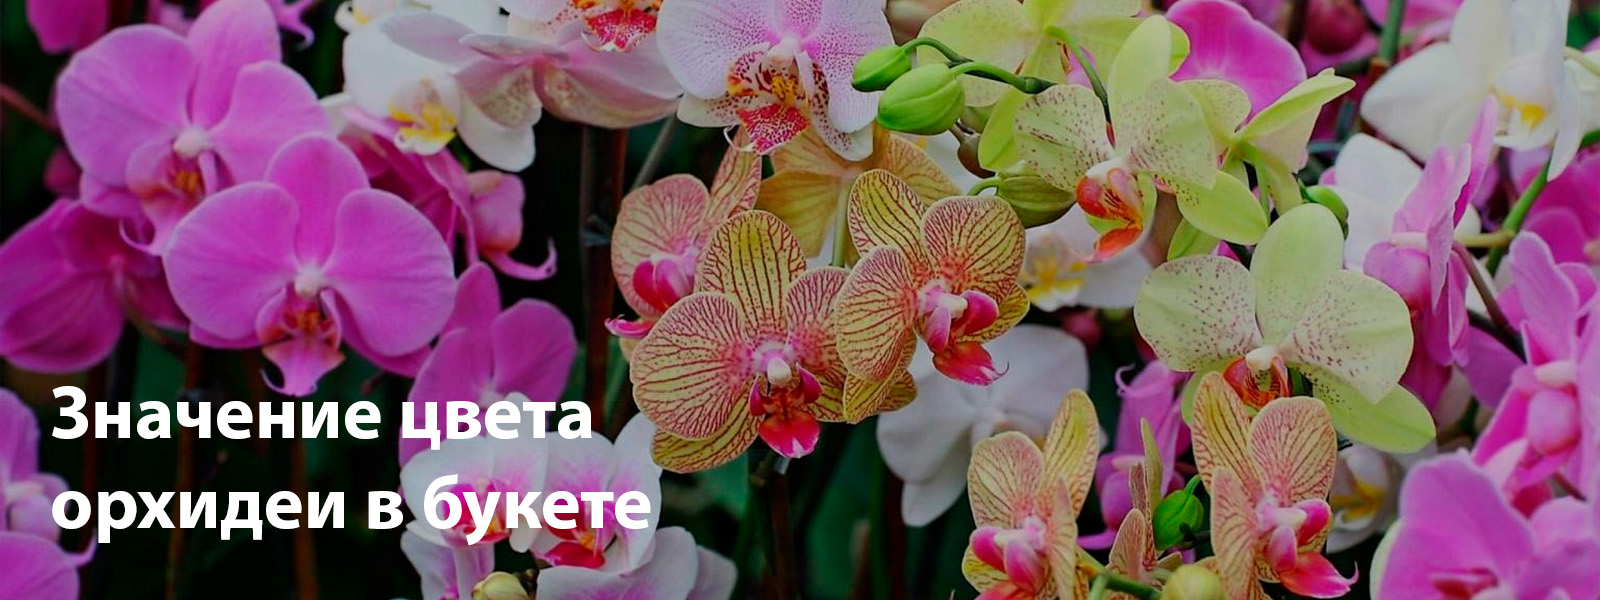 Значение цвета орхидеи в букете